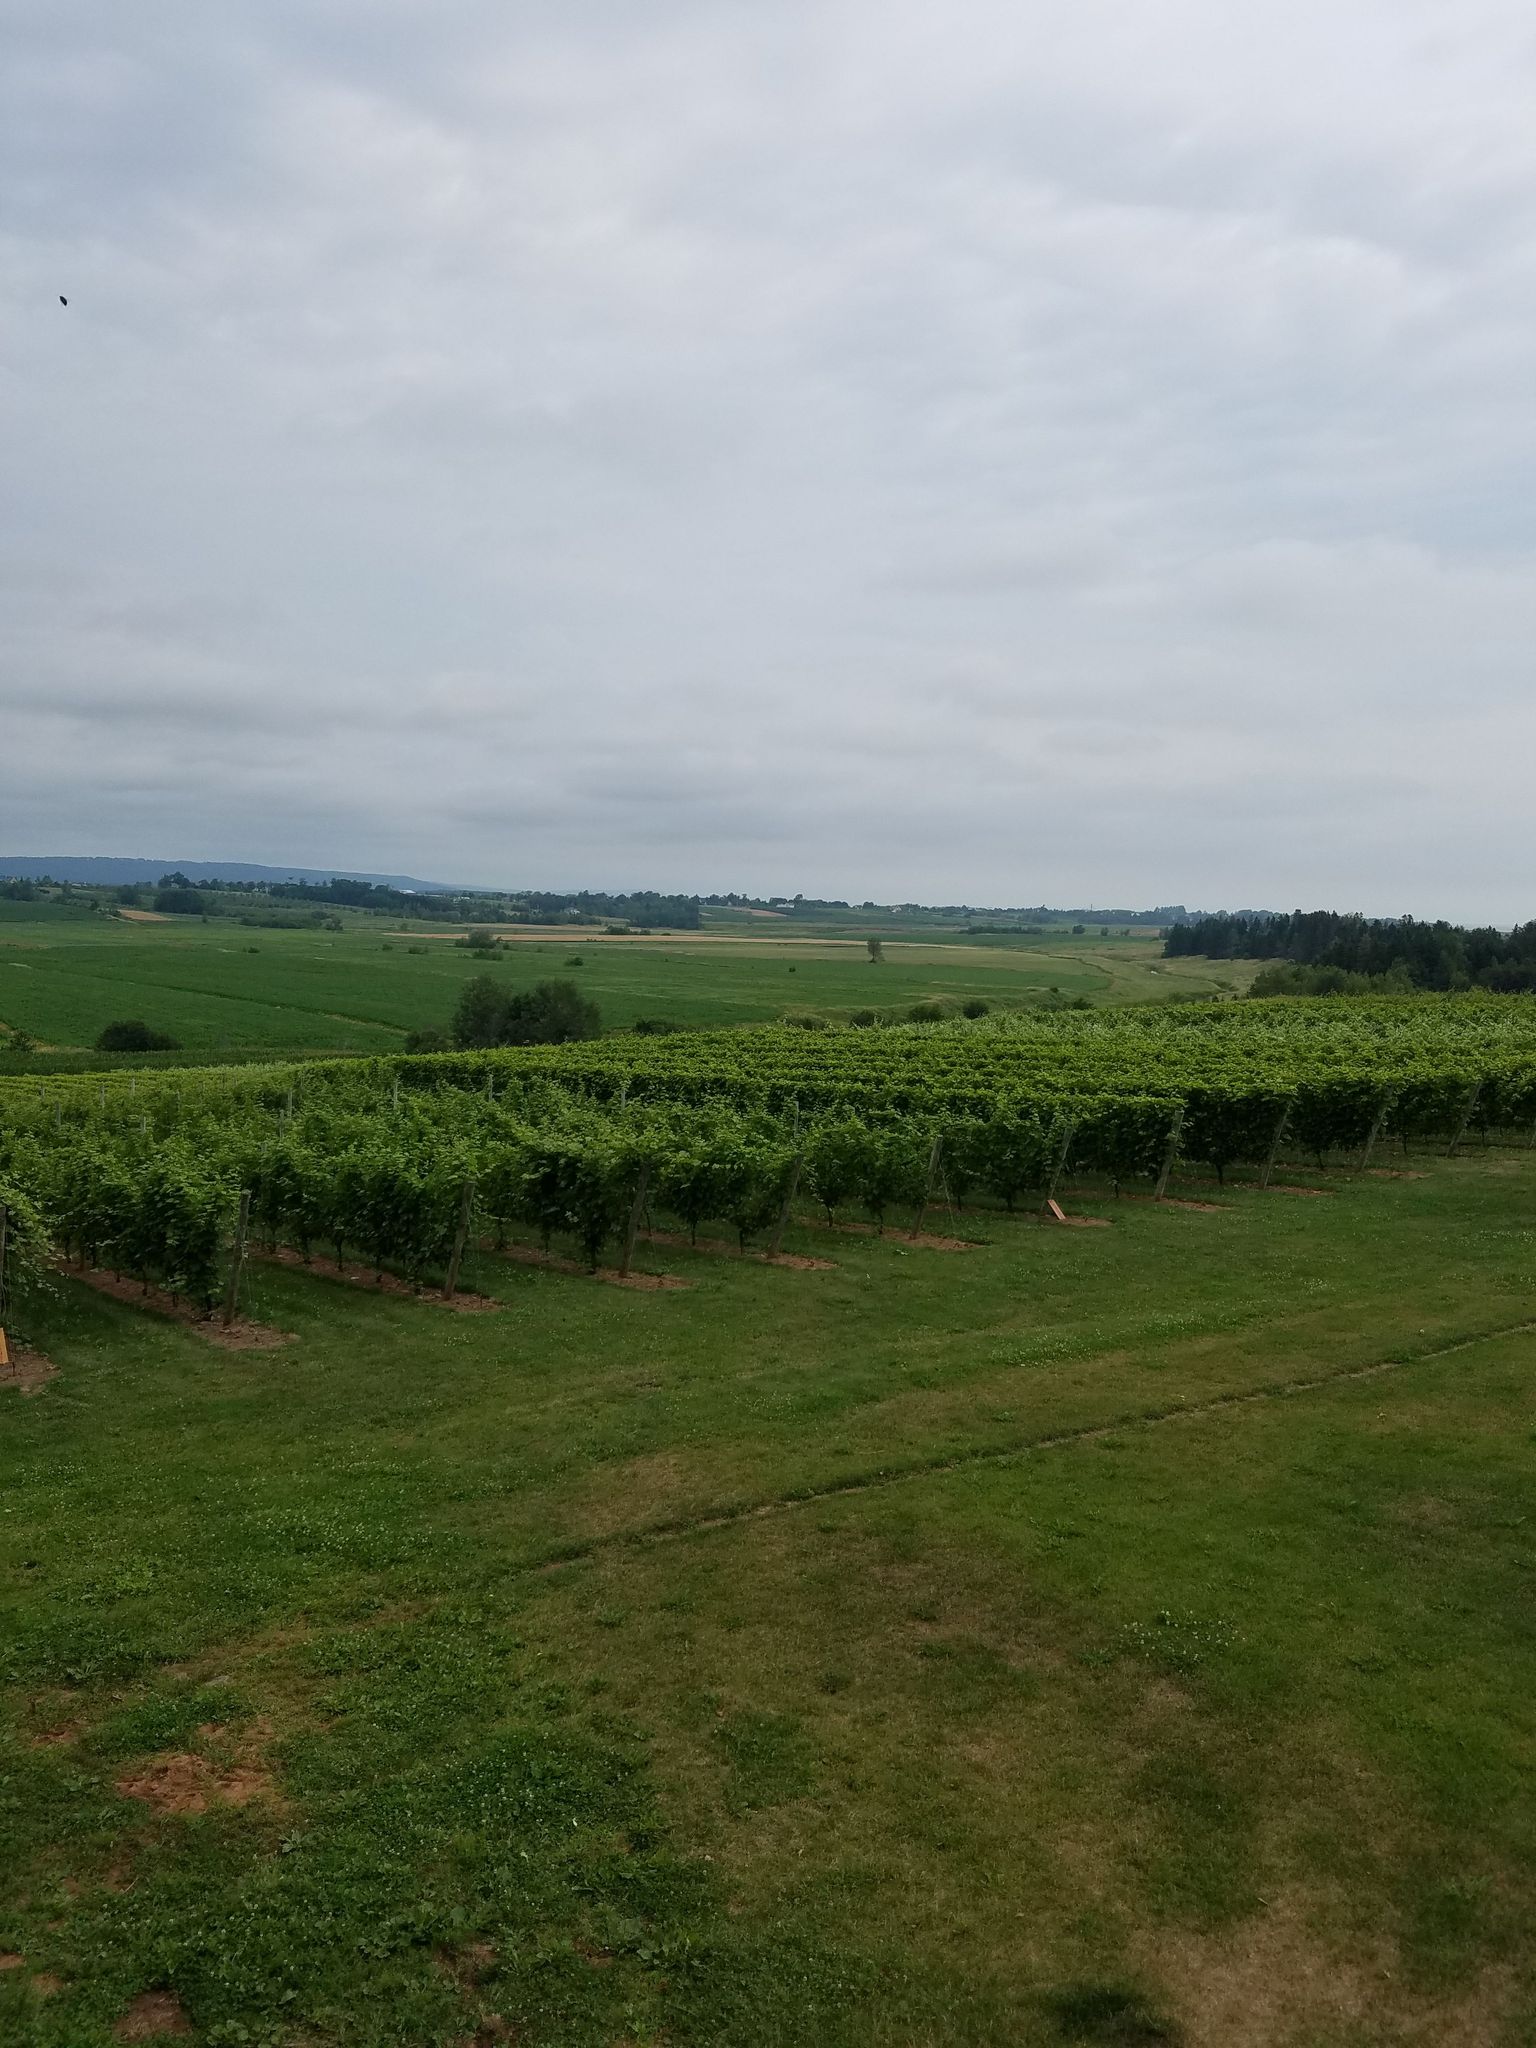 Vineyard at Planters Ridge.